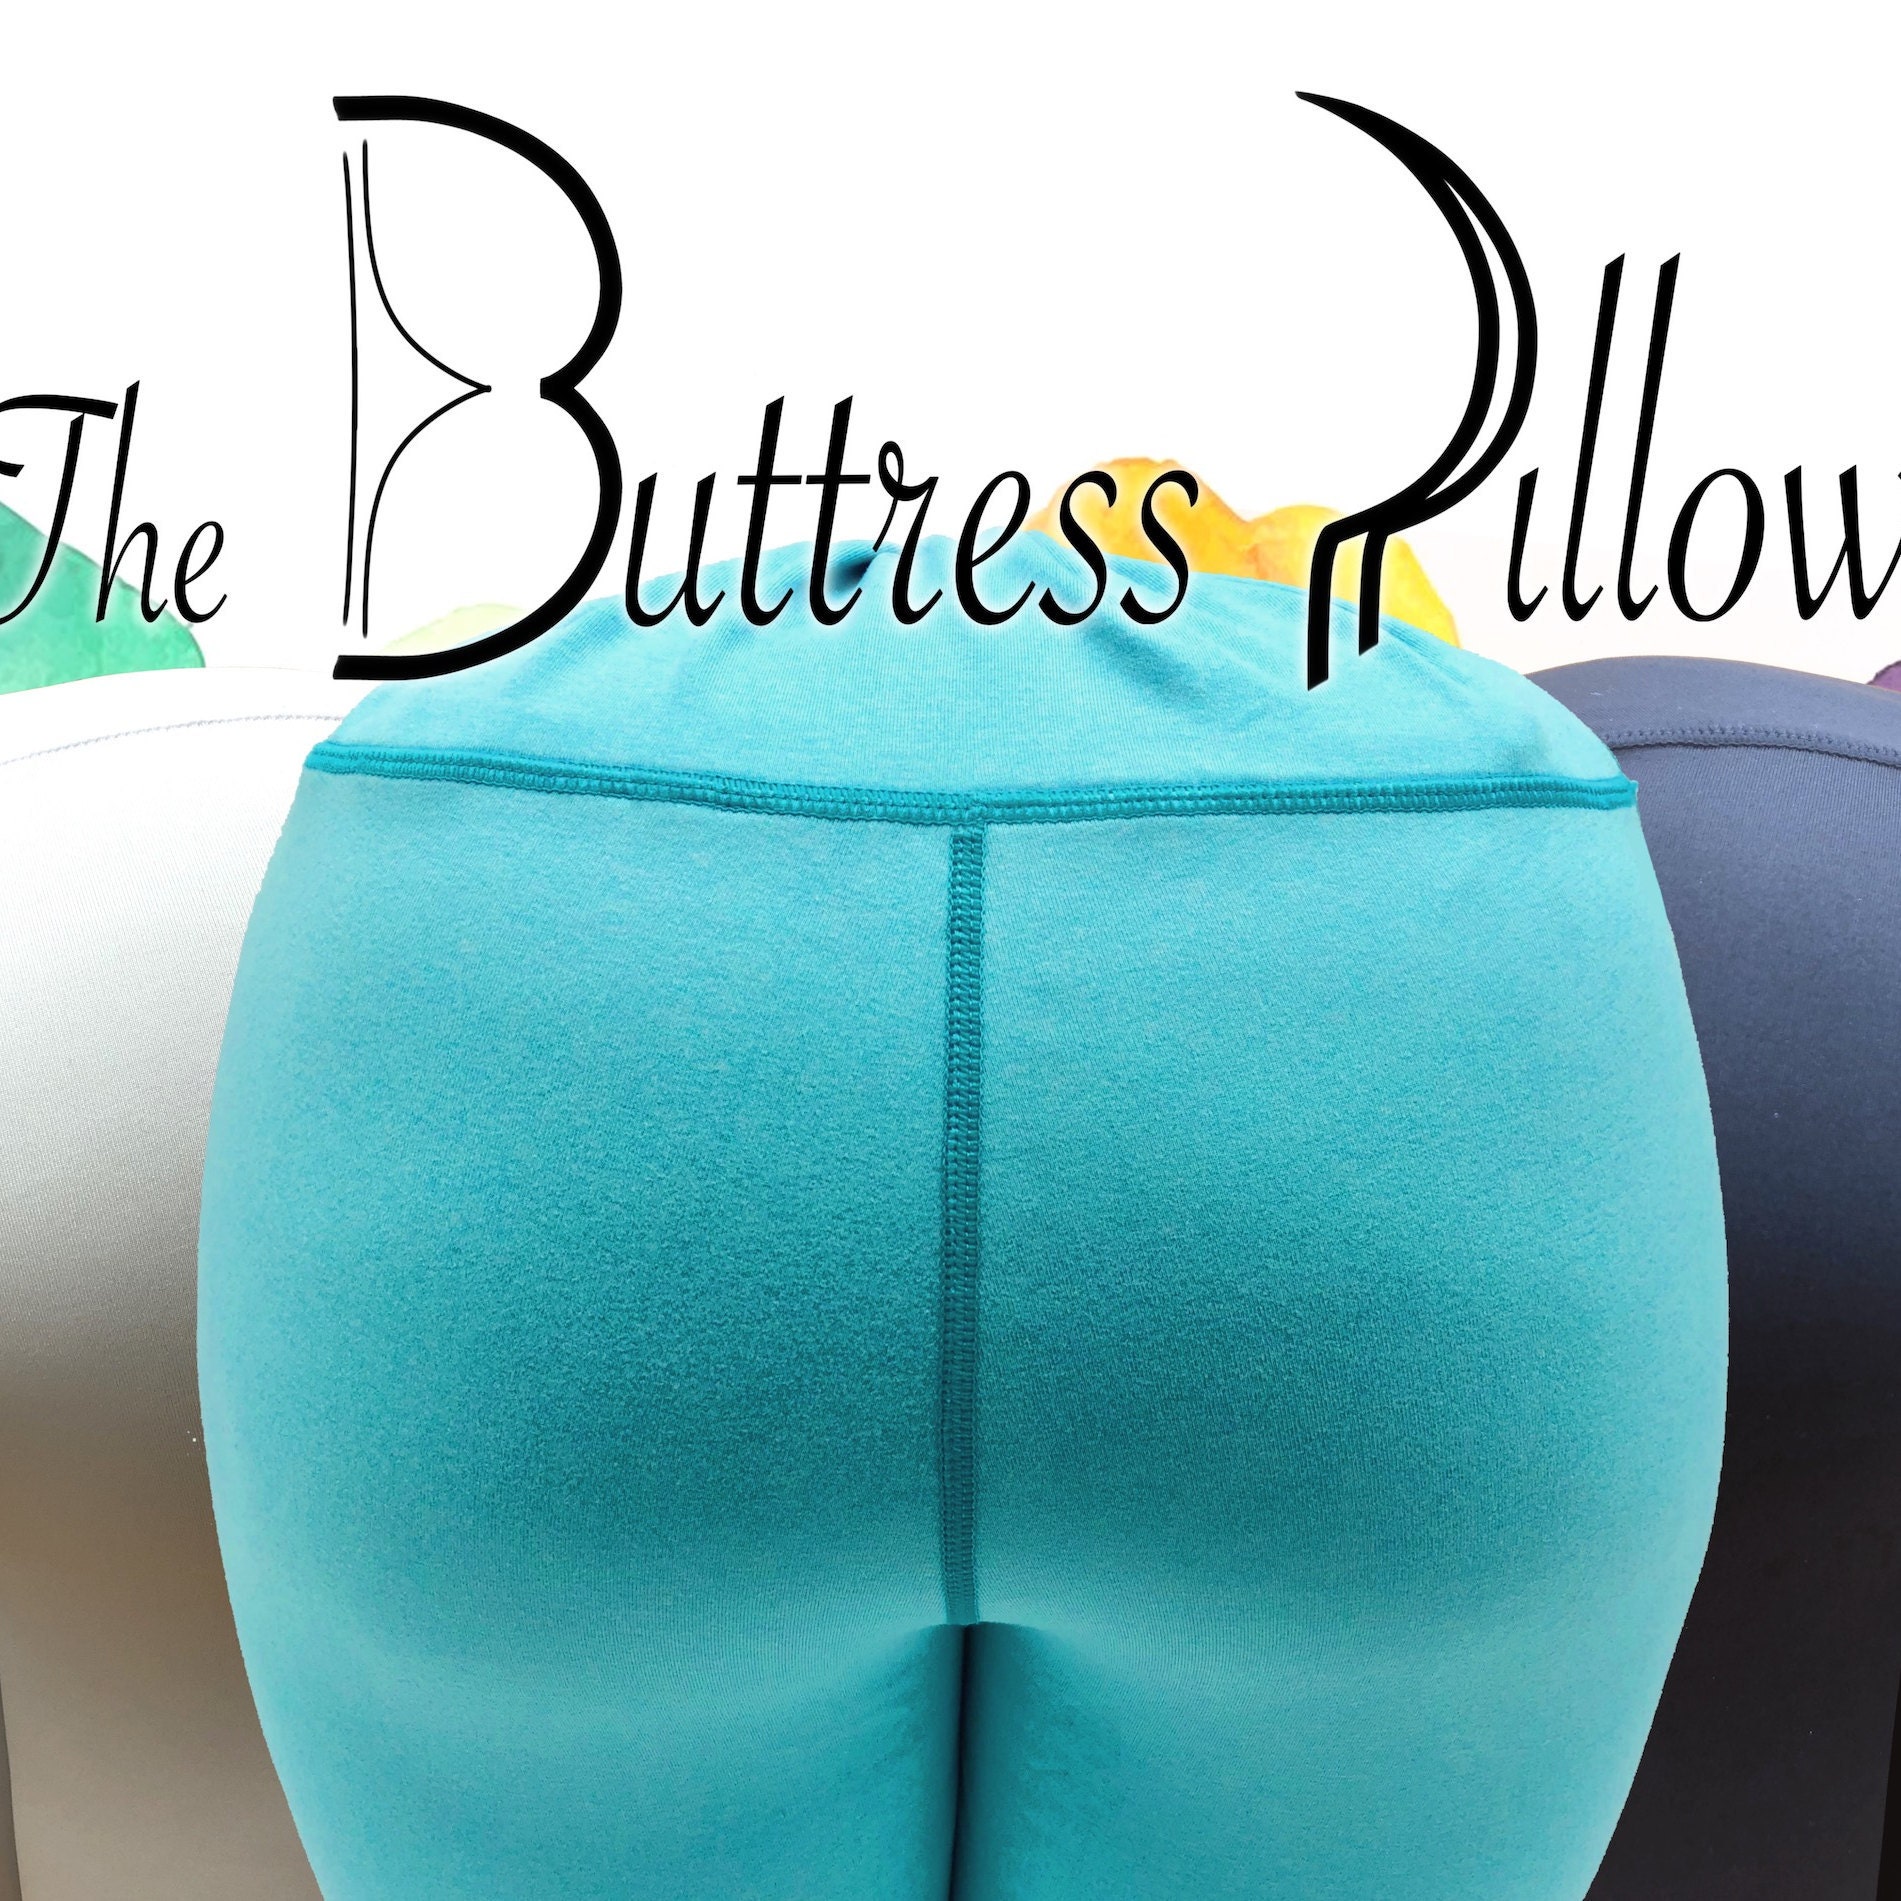 The Buttress Pillow